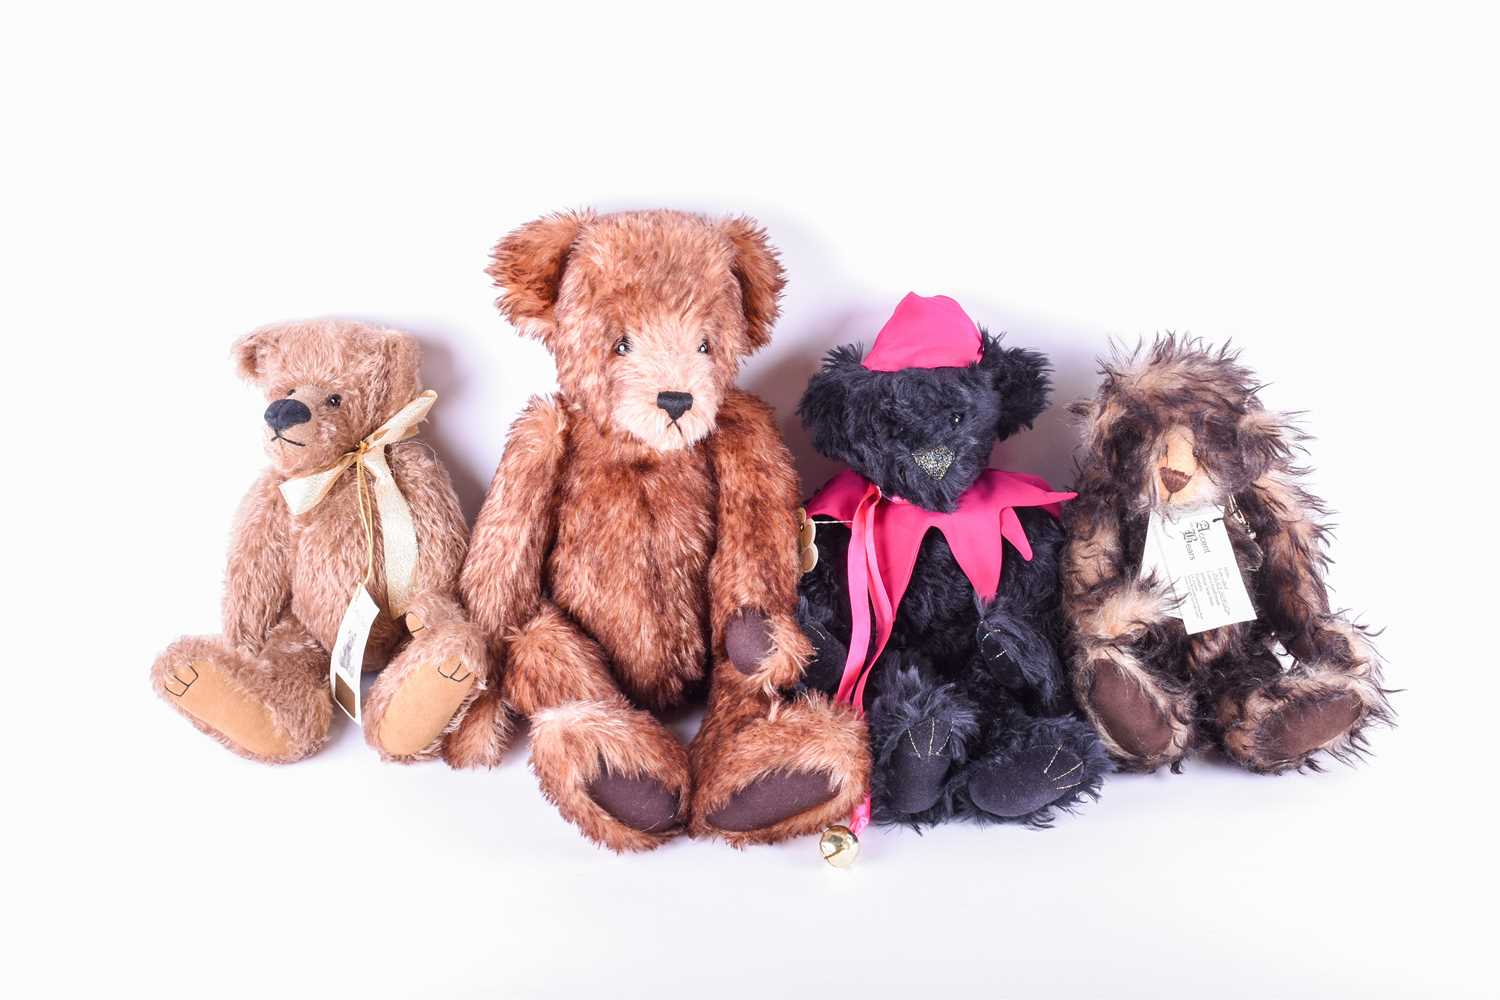 A large Diana Taylor 'Fair Bears' teddy bear, an Accents on Bears teddy named 'Alexandra', a